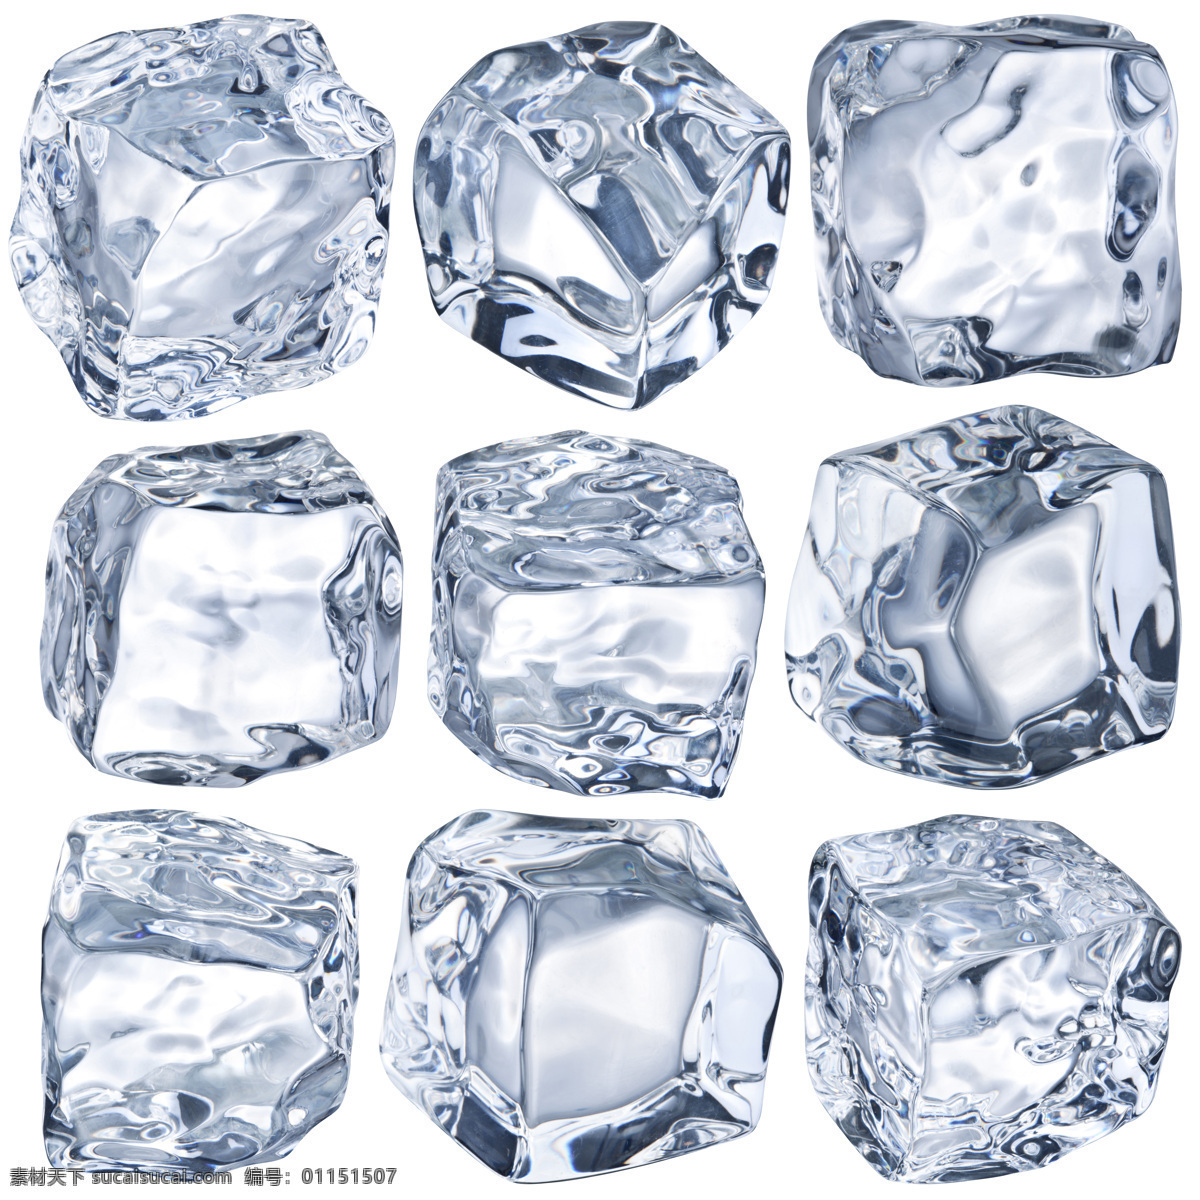 冰块 高清图片 晶莹剔透 冰块图片素材 冰块高清图片 晶莹图片素材 水晶图片 冰块图片 白色